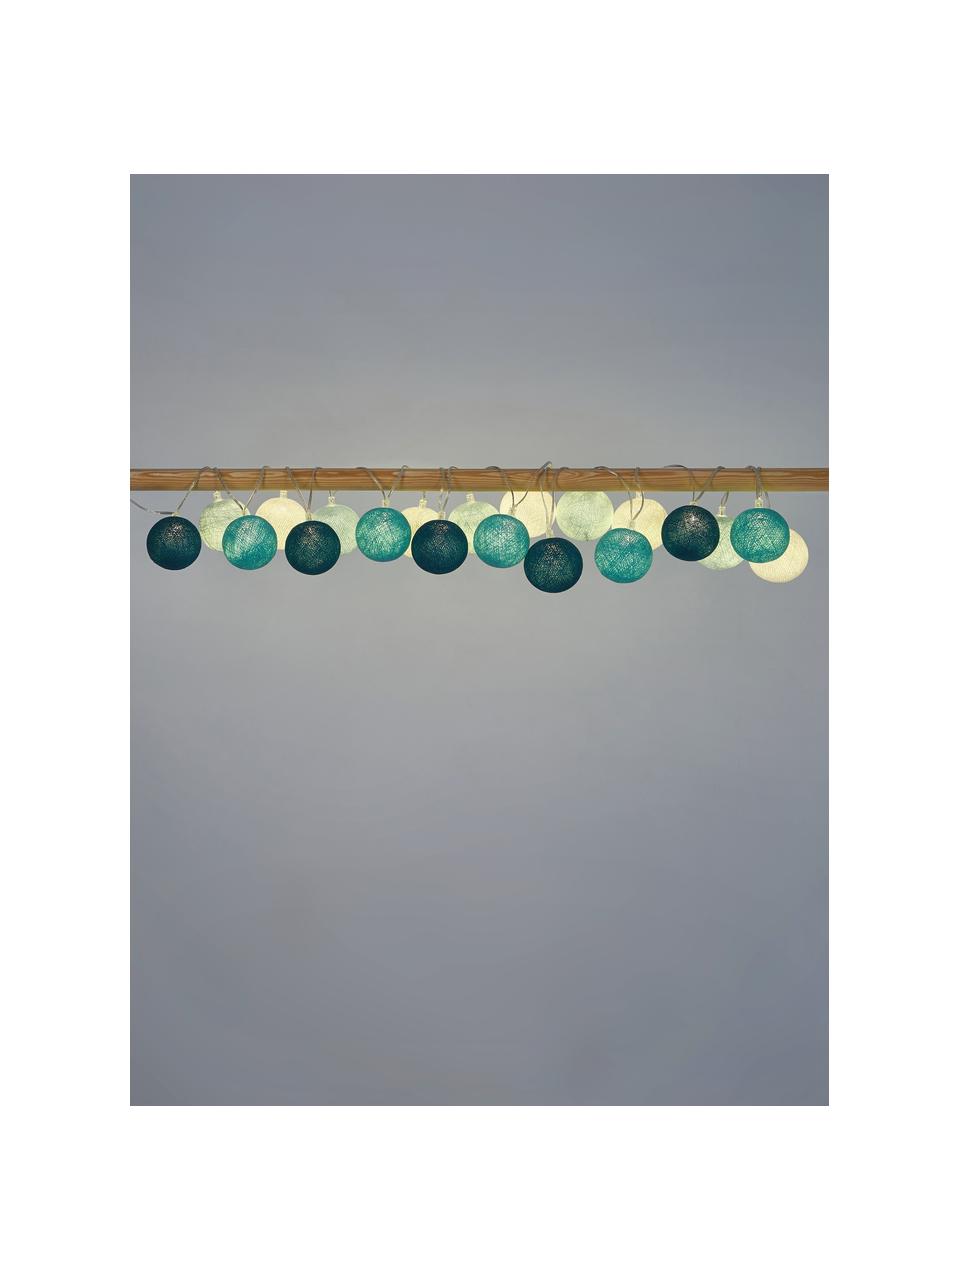 Guirlande lumineuse LED Colorain, 378 cm, Blanc, tons bleus, long. 378 cm